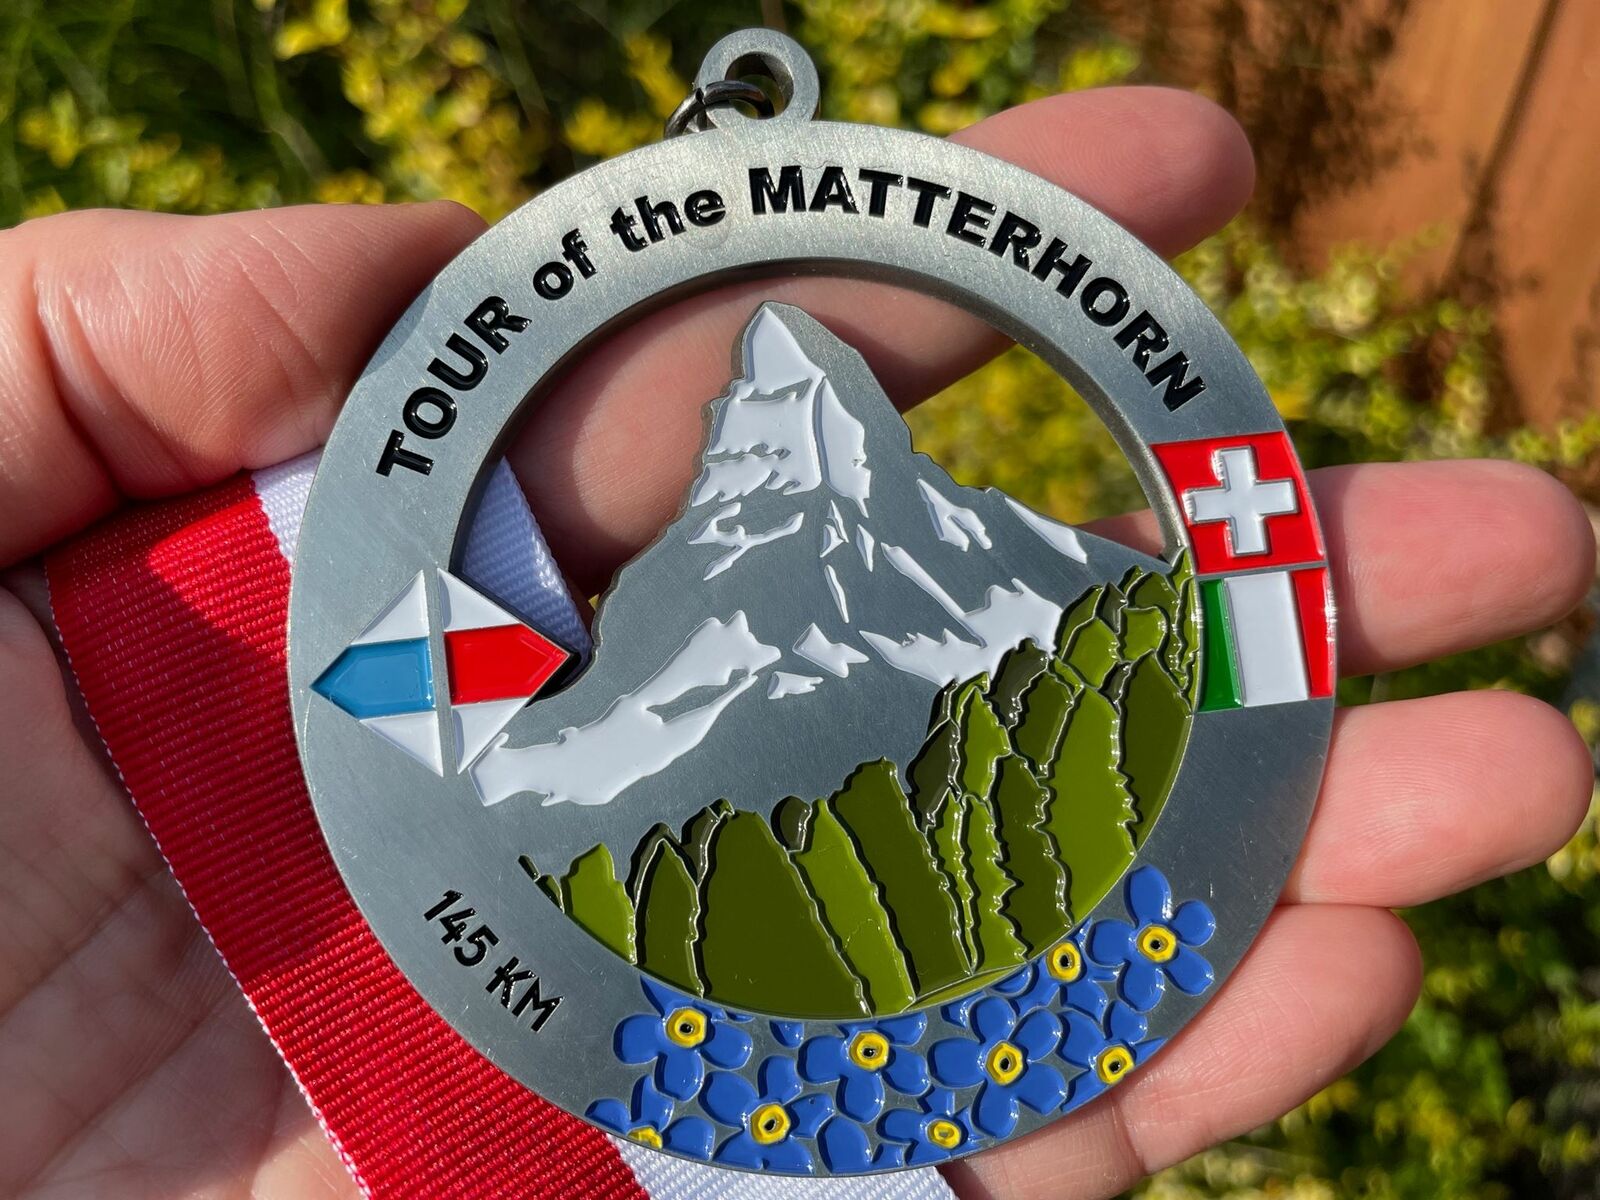 Tour of the Matterhorn Medal